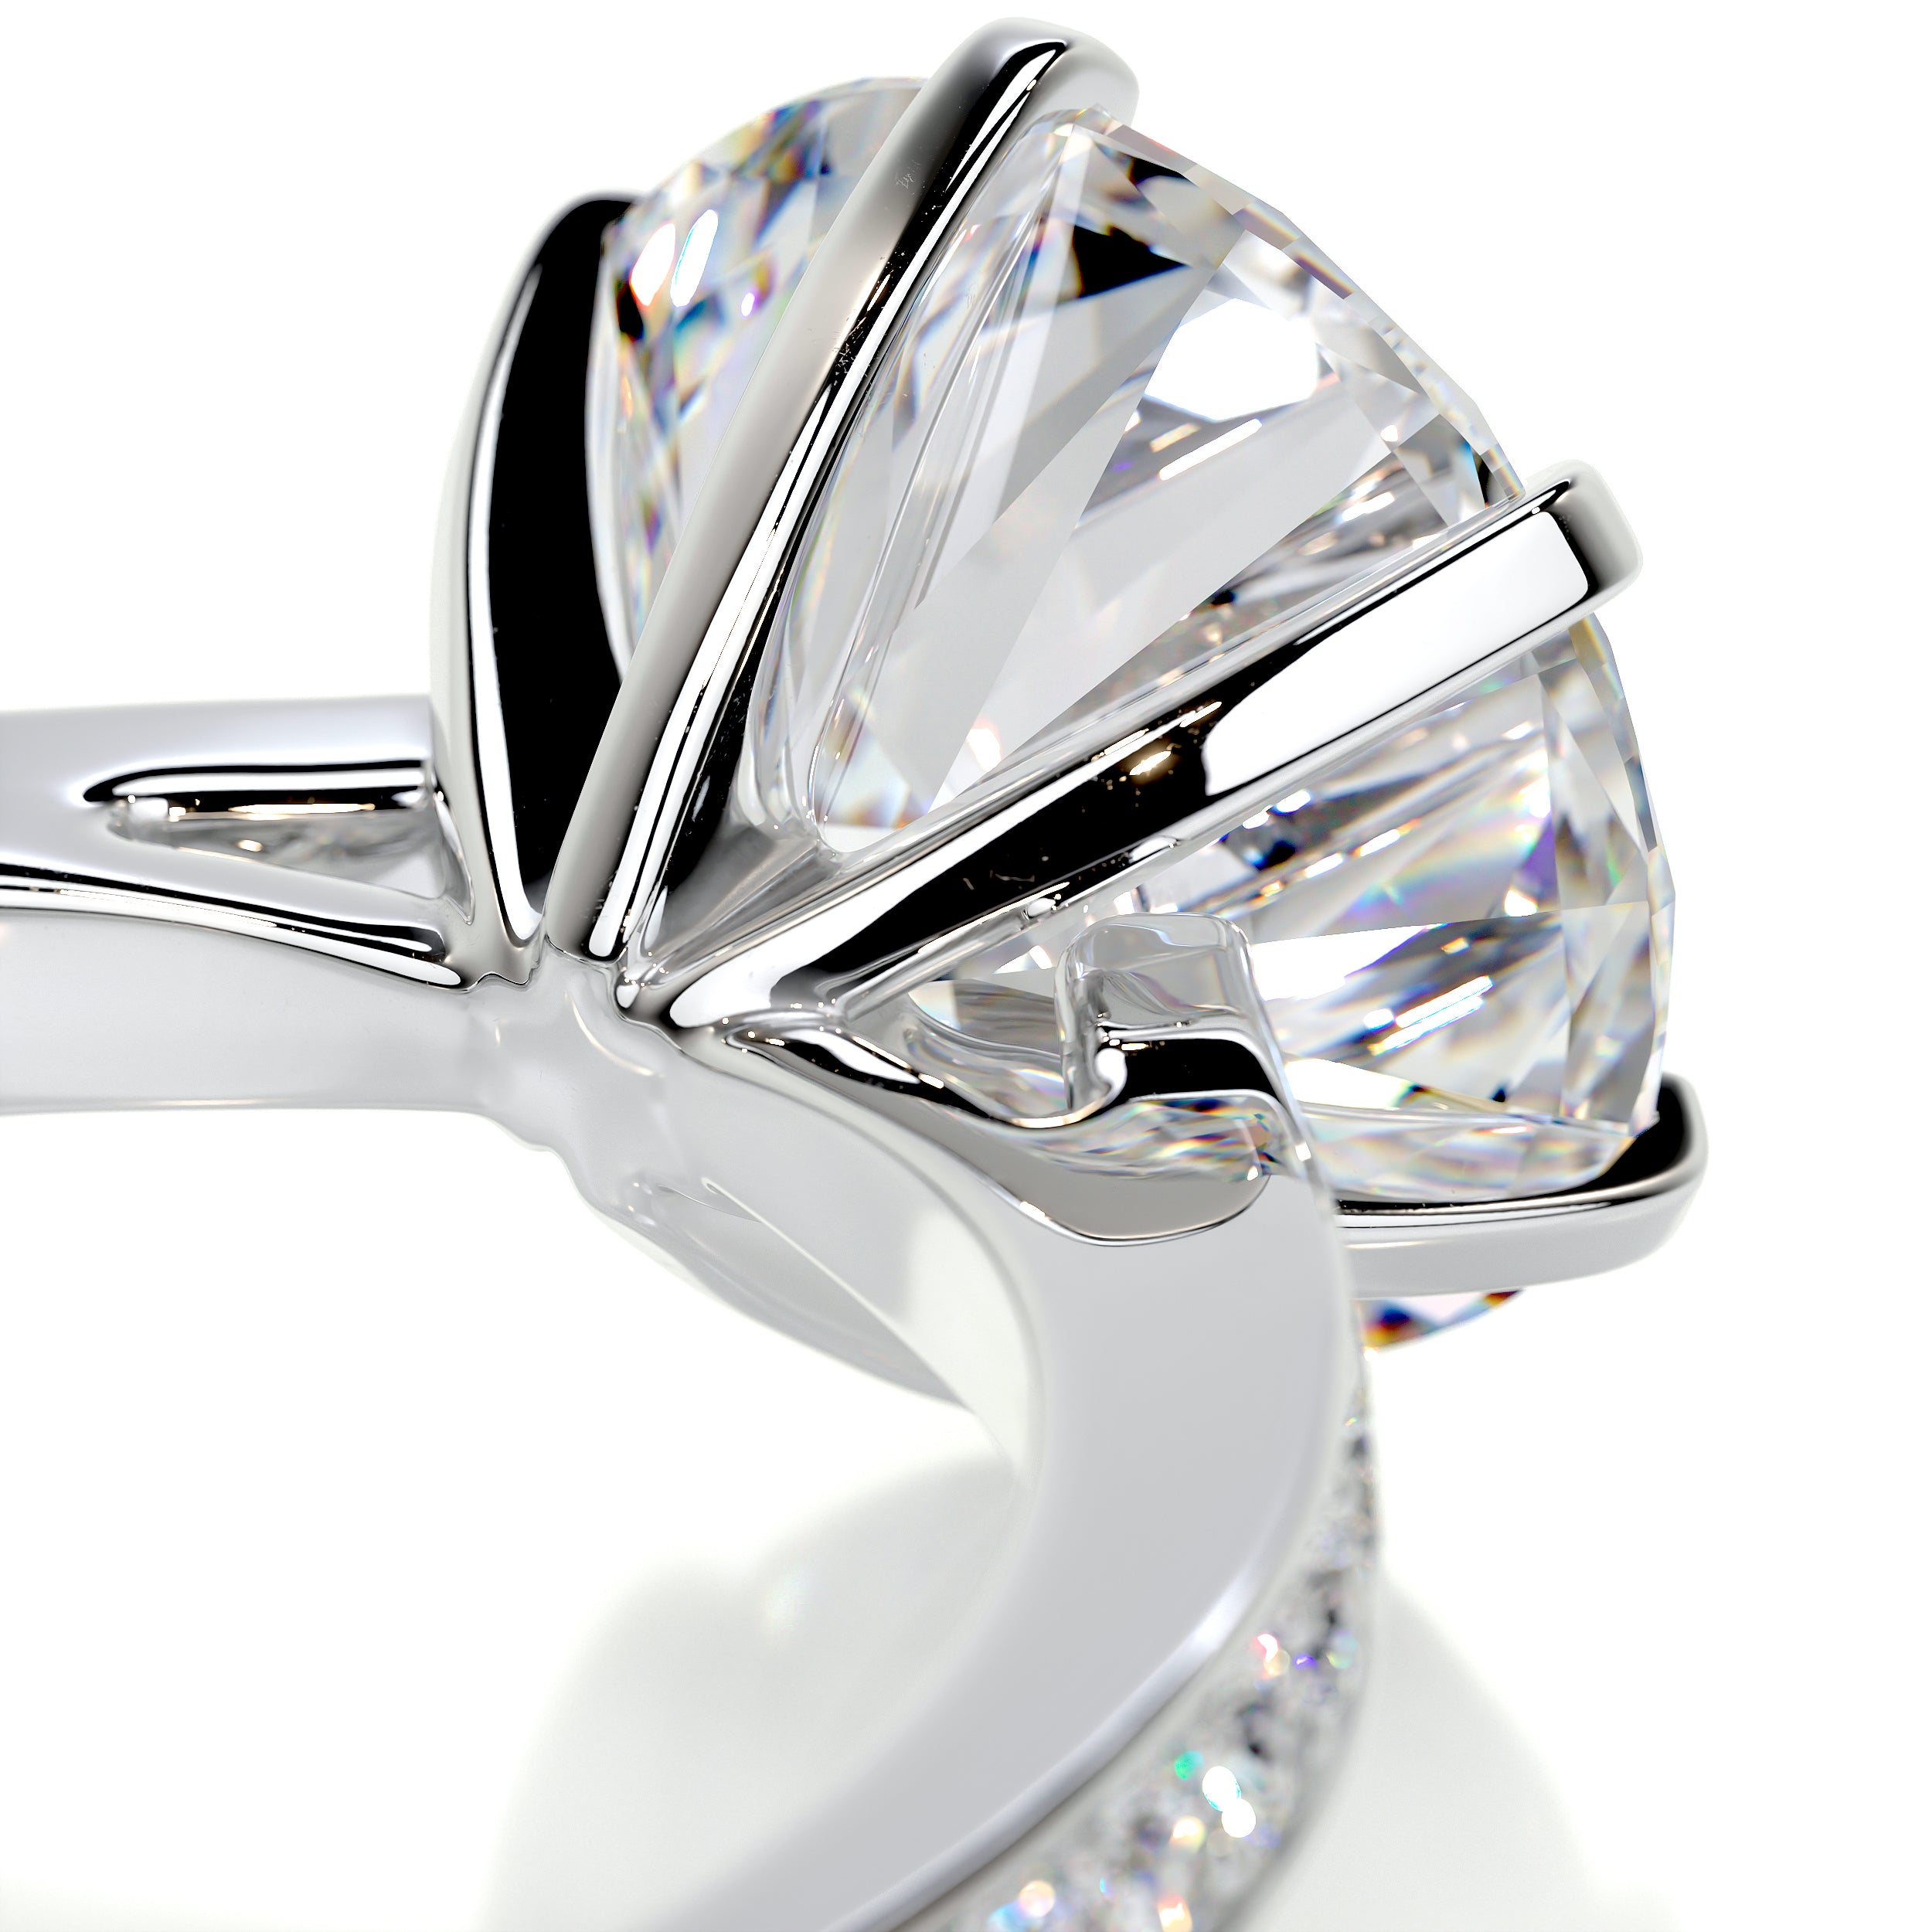 Talia Moissanite & Diamonds Ring -14K White Gold